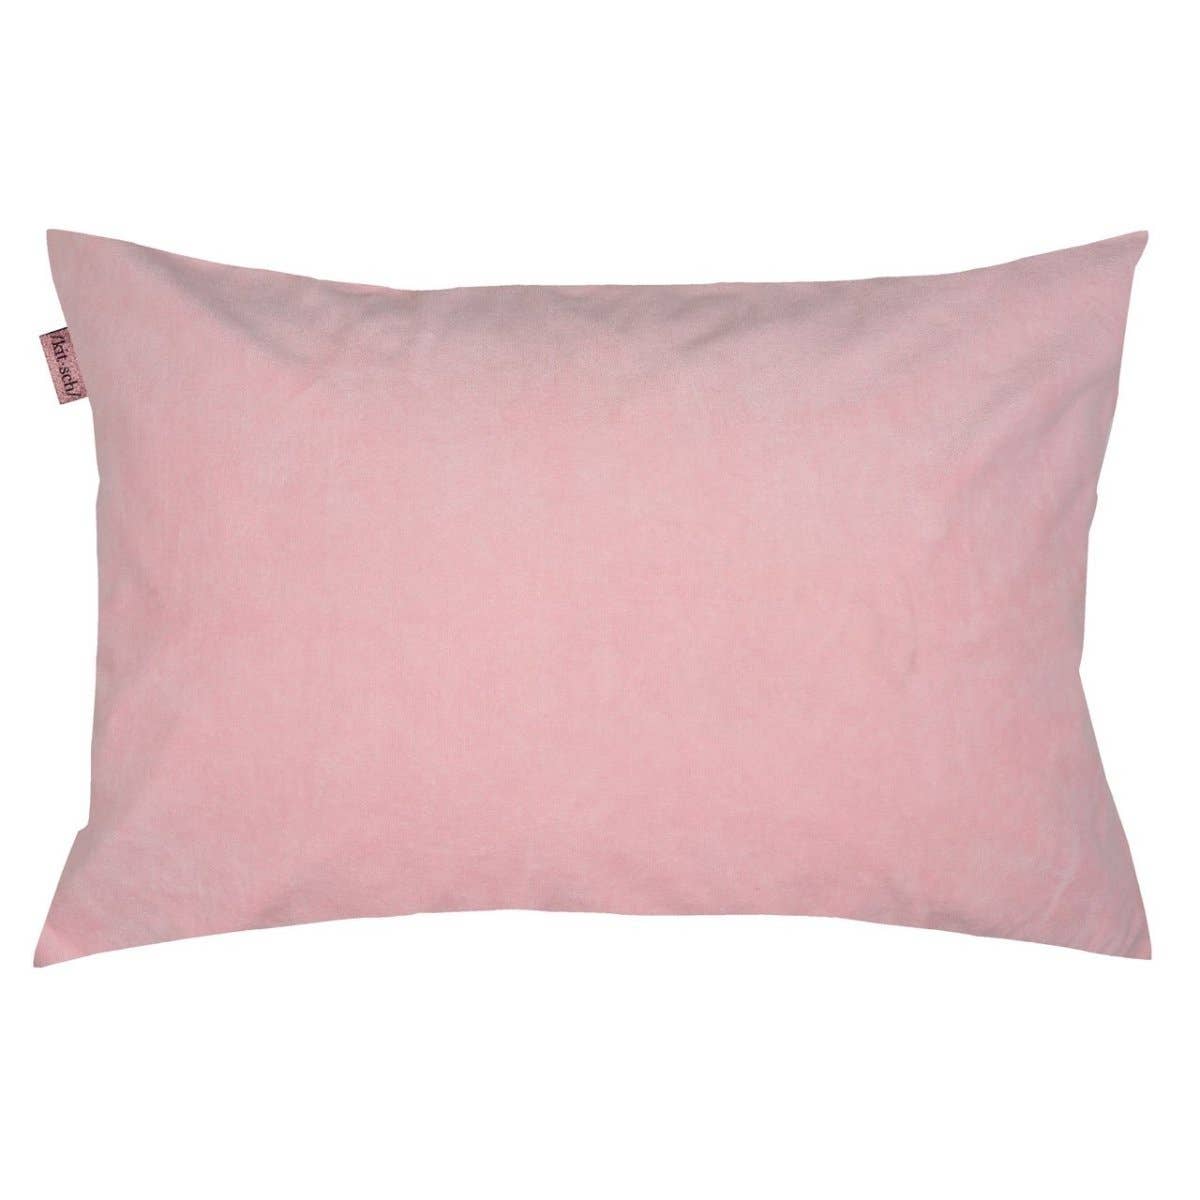 Kitsch Towel Pillow Cover  Kitsch   